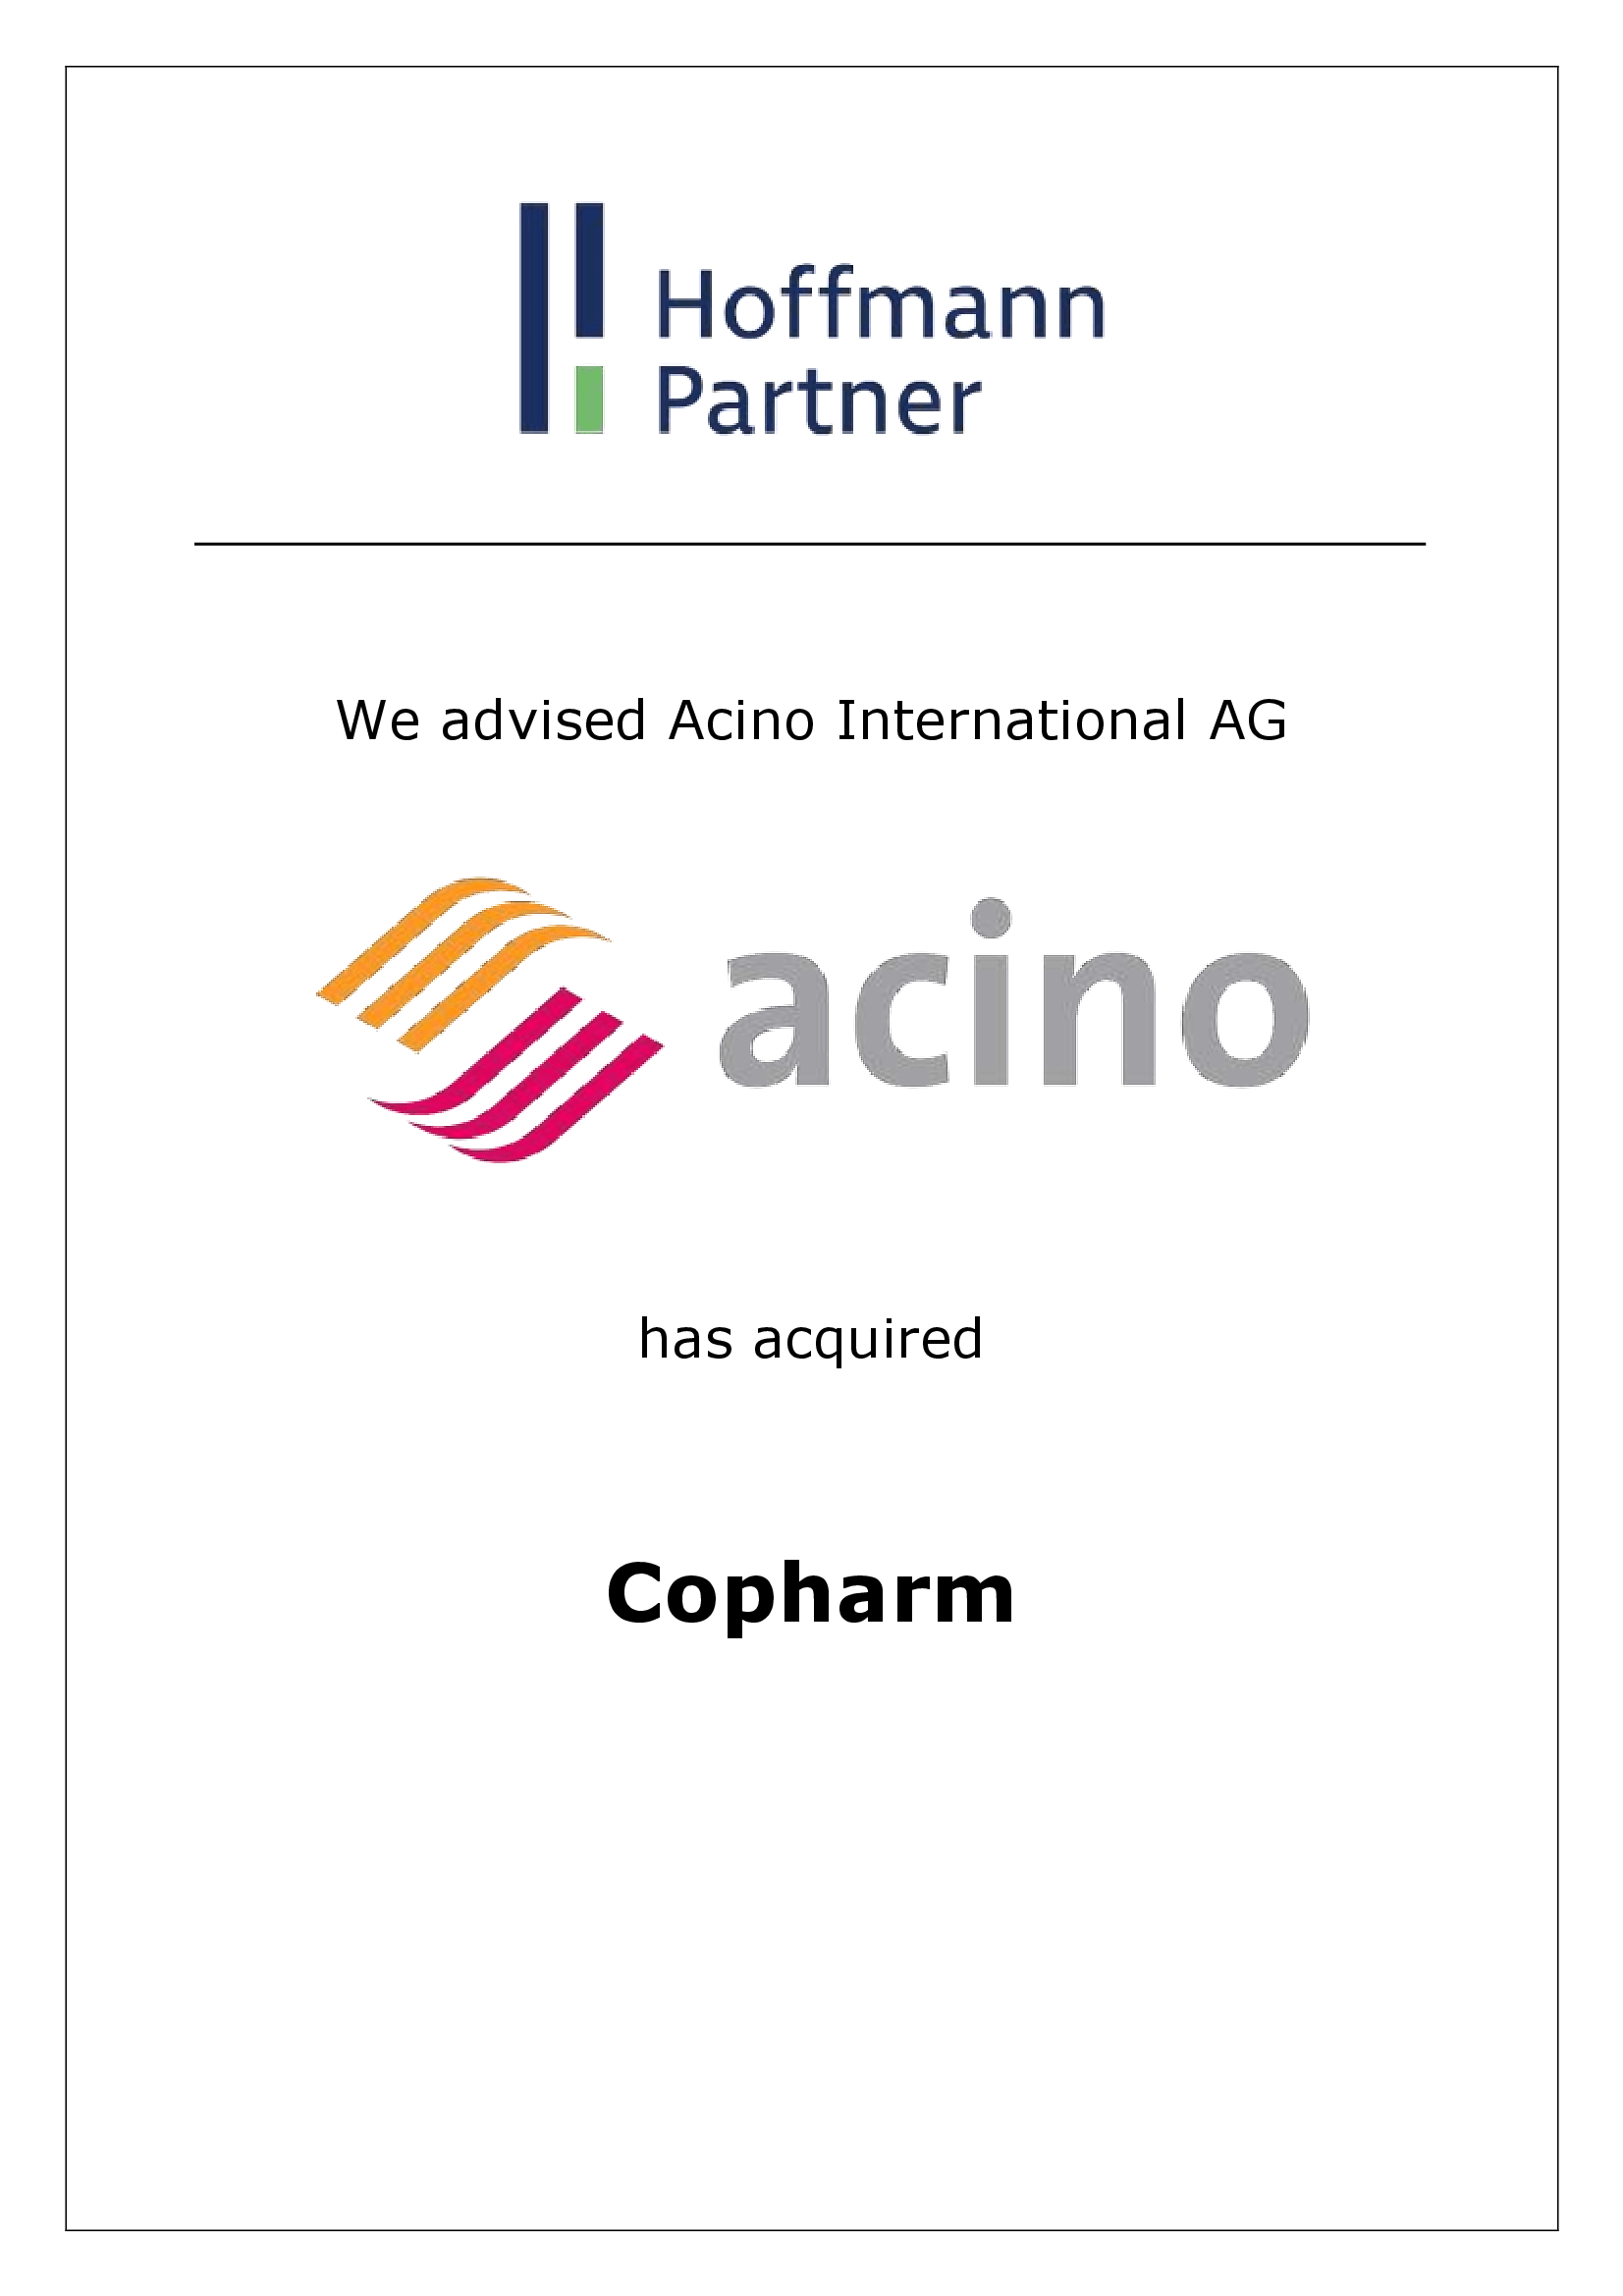 Acino - copharm